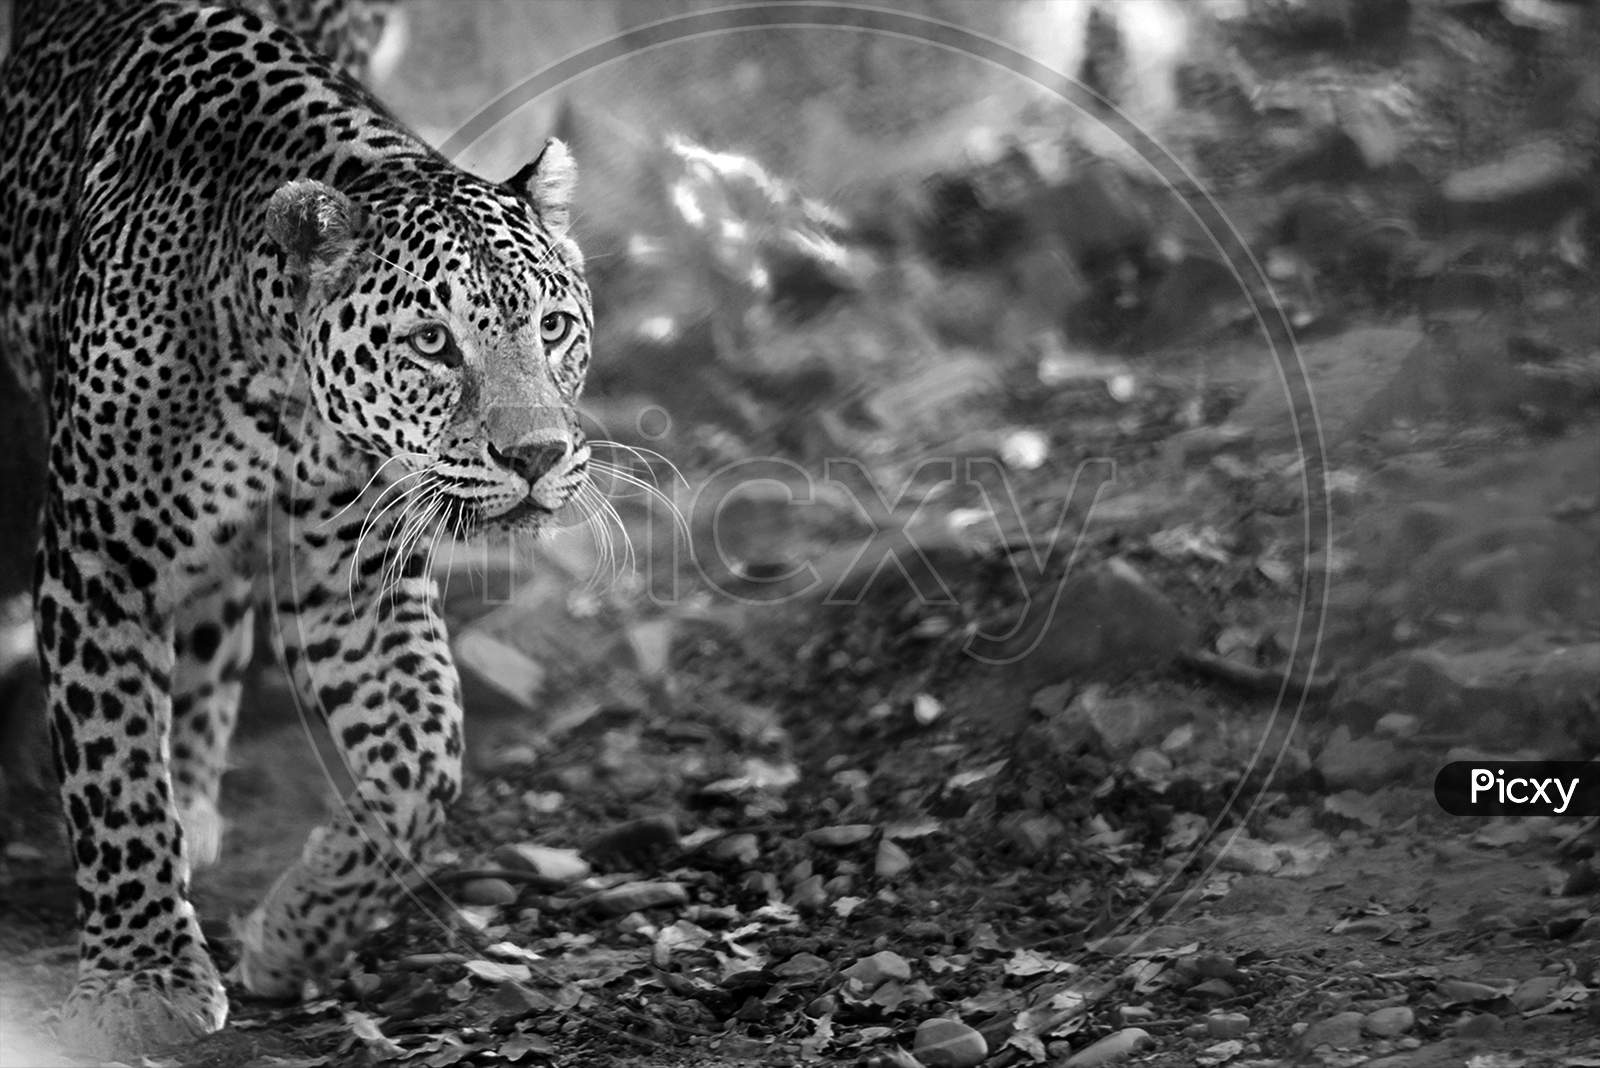 Leopard Taking Stroll In Monochrome , Soft Focus